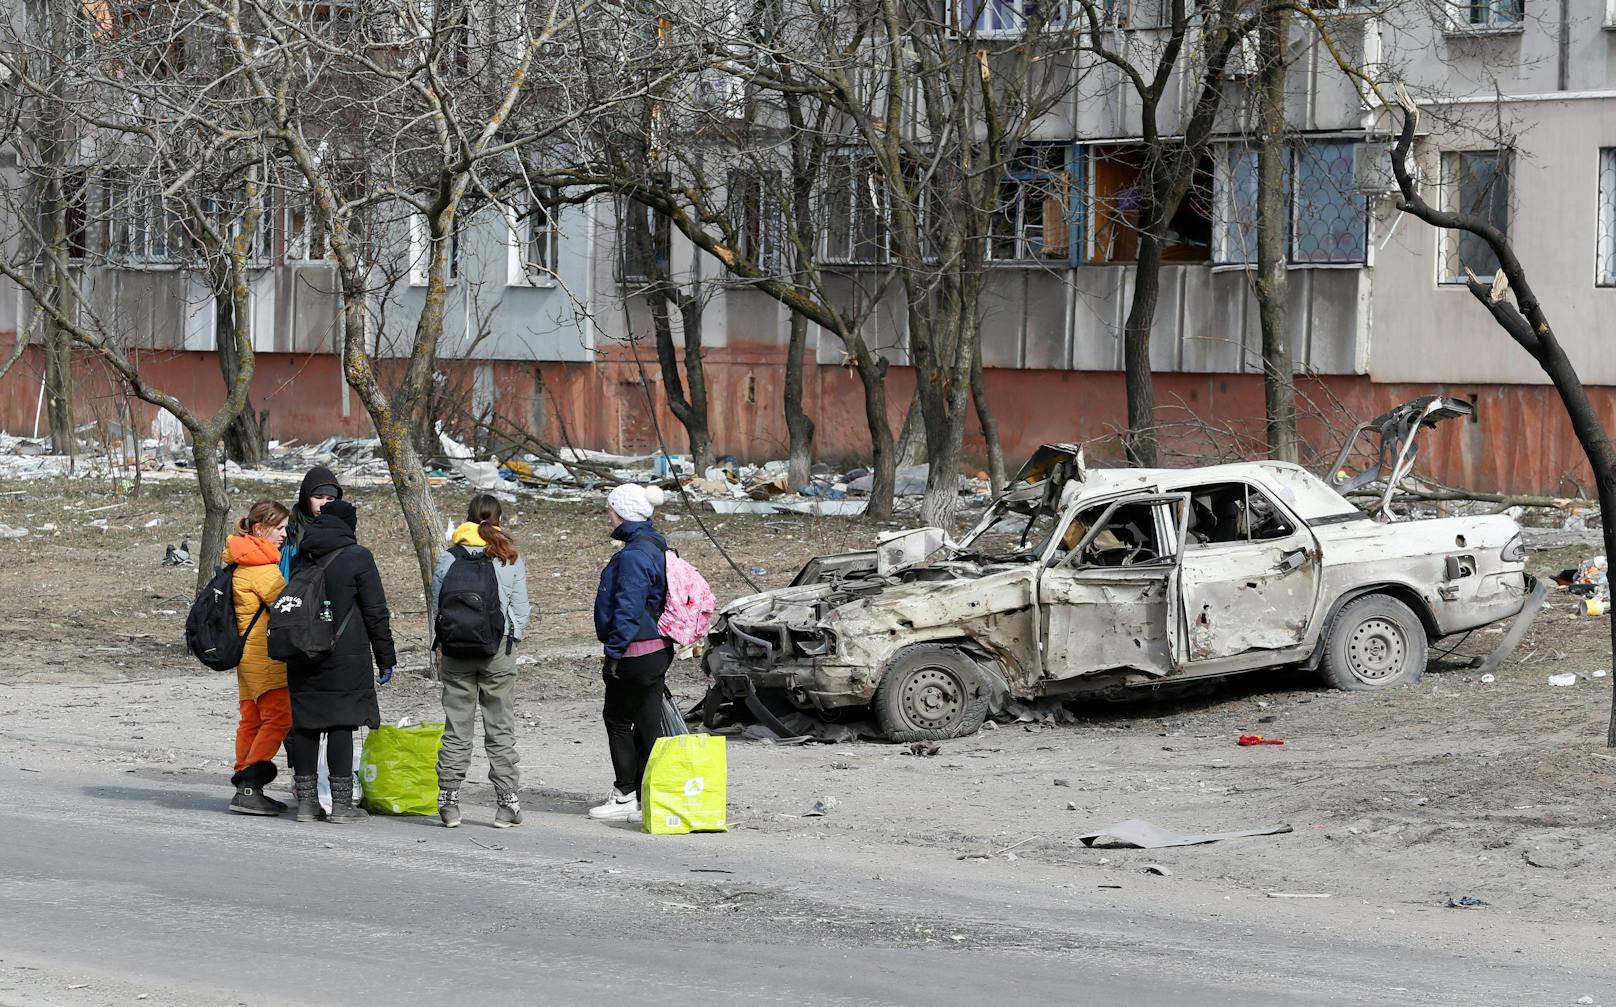 Weitere Eindrücke zur aktuellen Lage in Mariupol findest du auf den folgenden Bildern.